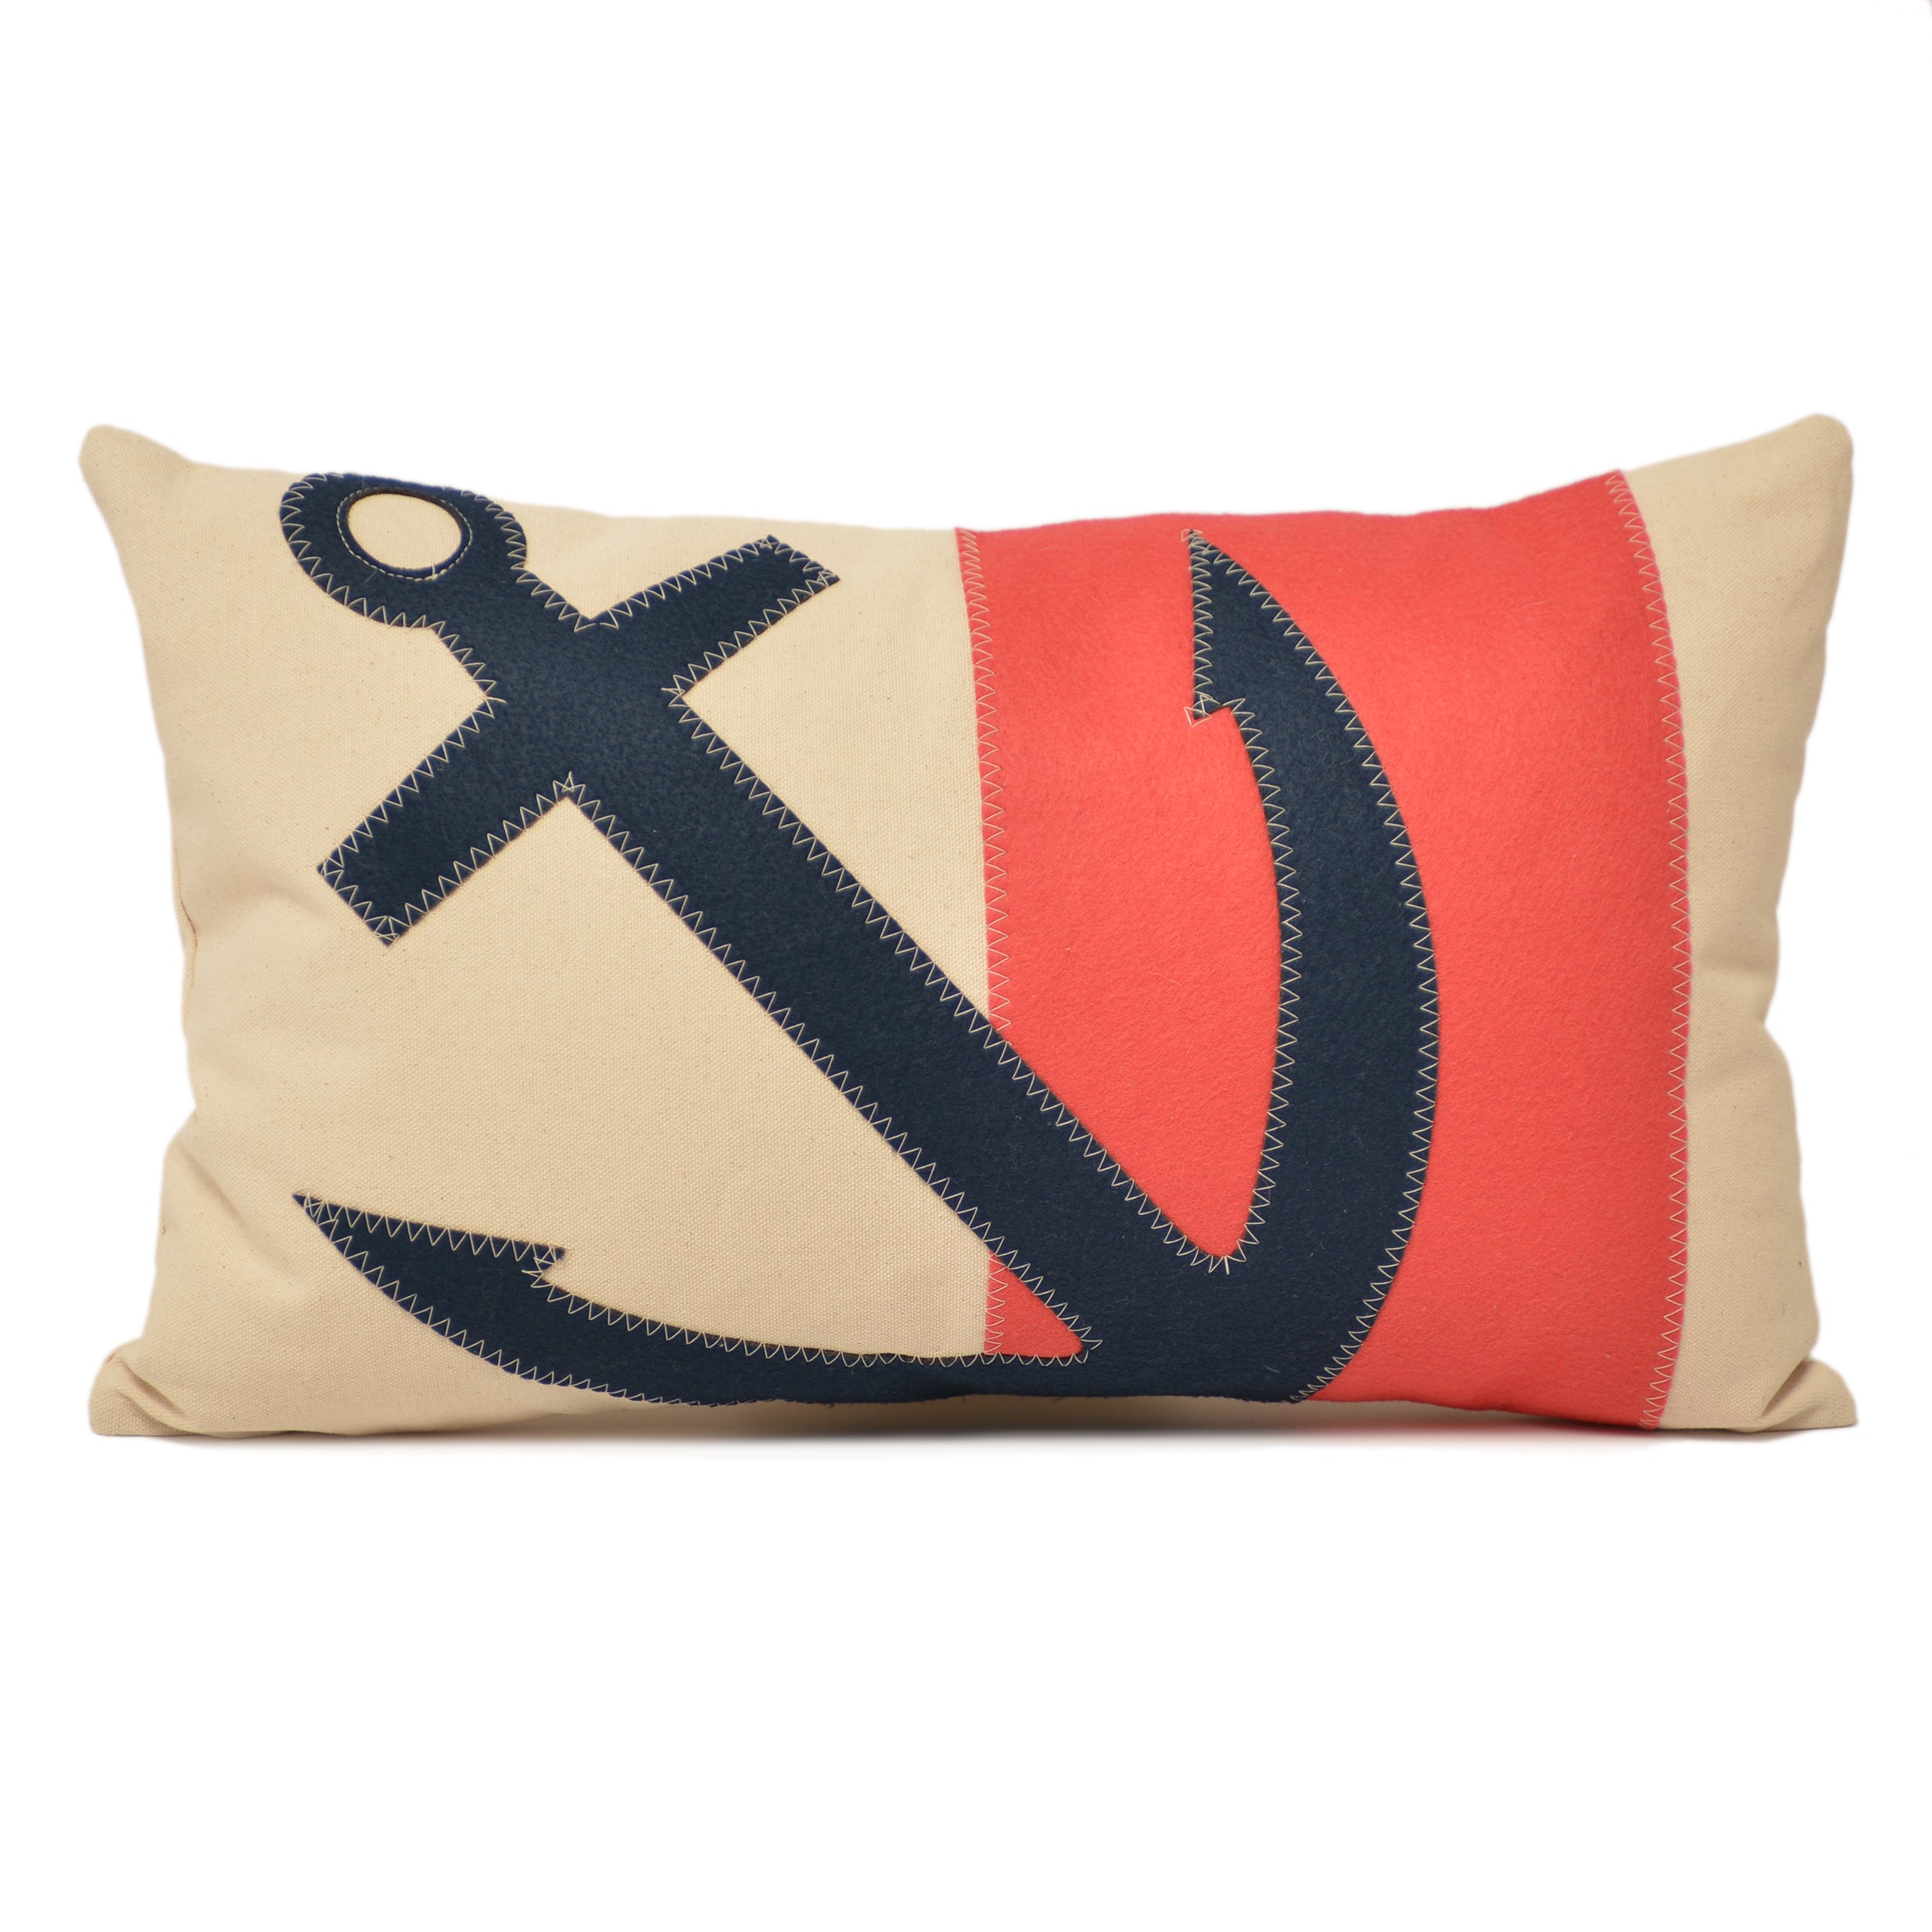 14X21" Angled Anchor Lumbar Pillow - Navy + Coral